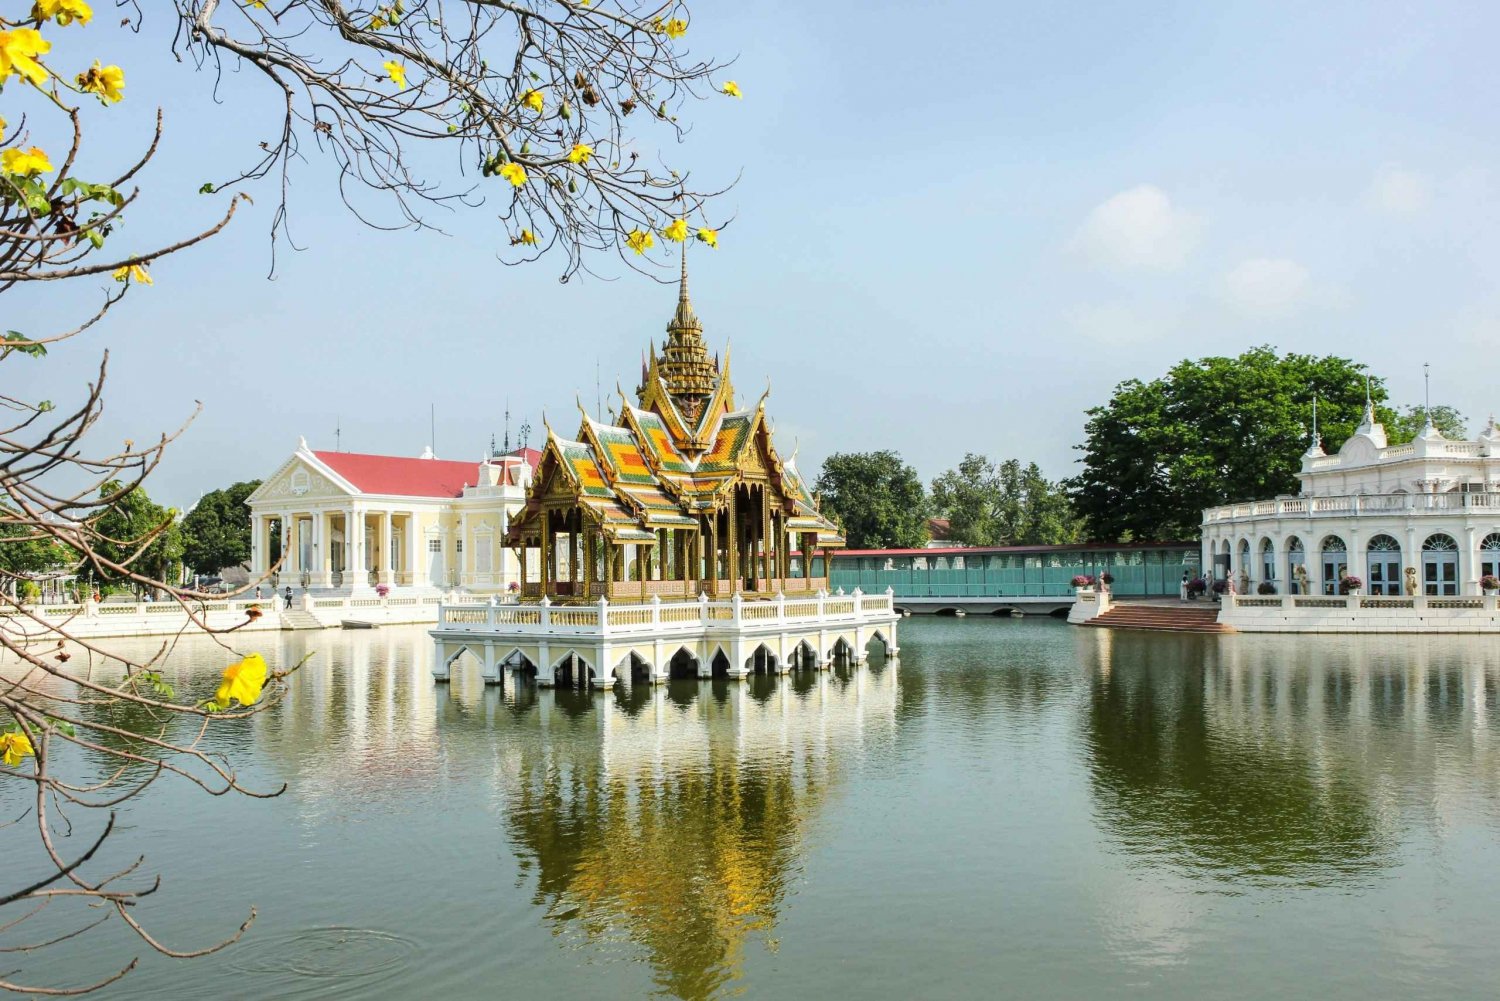 Bangkok: Bang Pa-In Royal Palace and Ayutthaya Day Trip